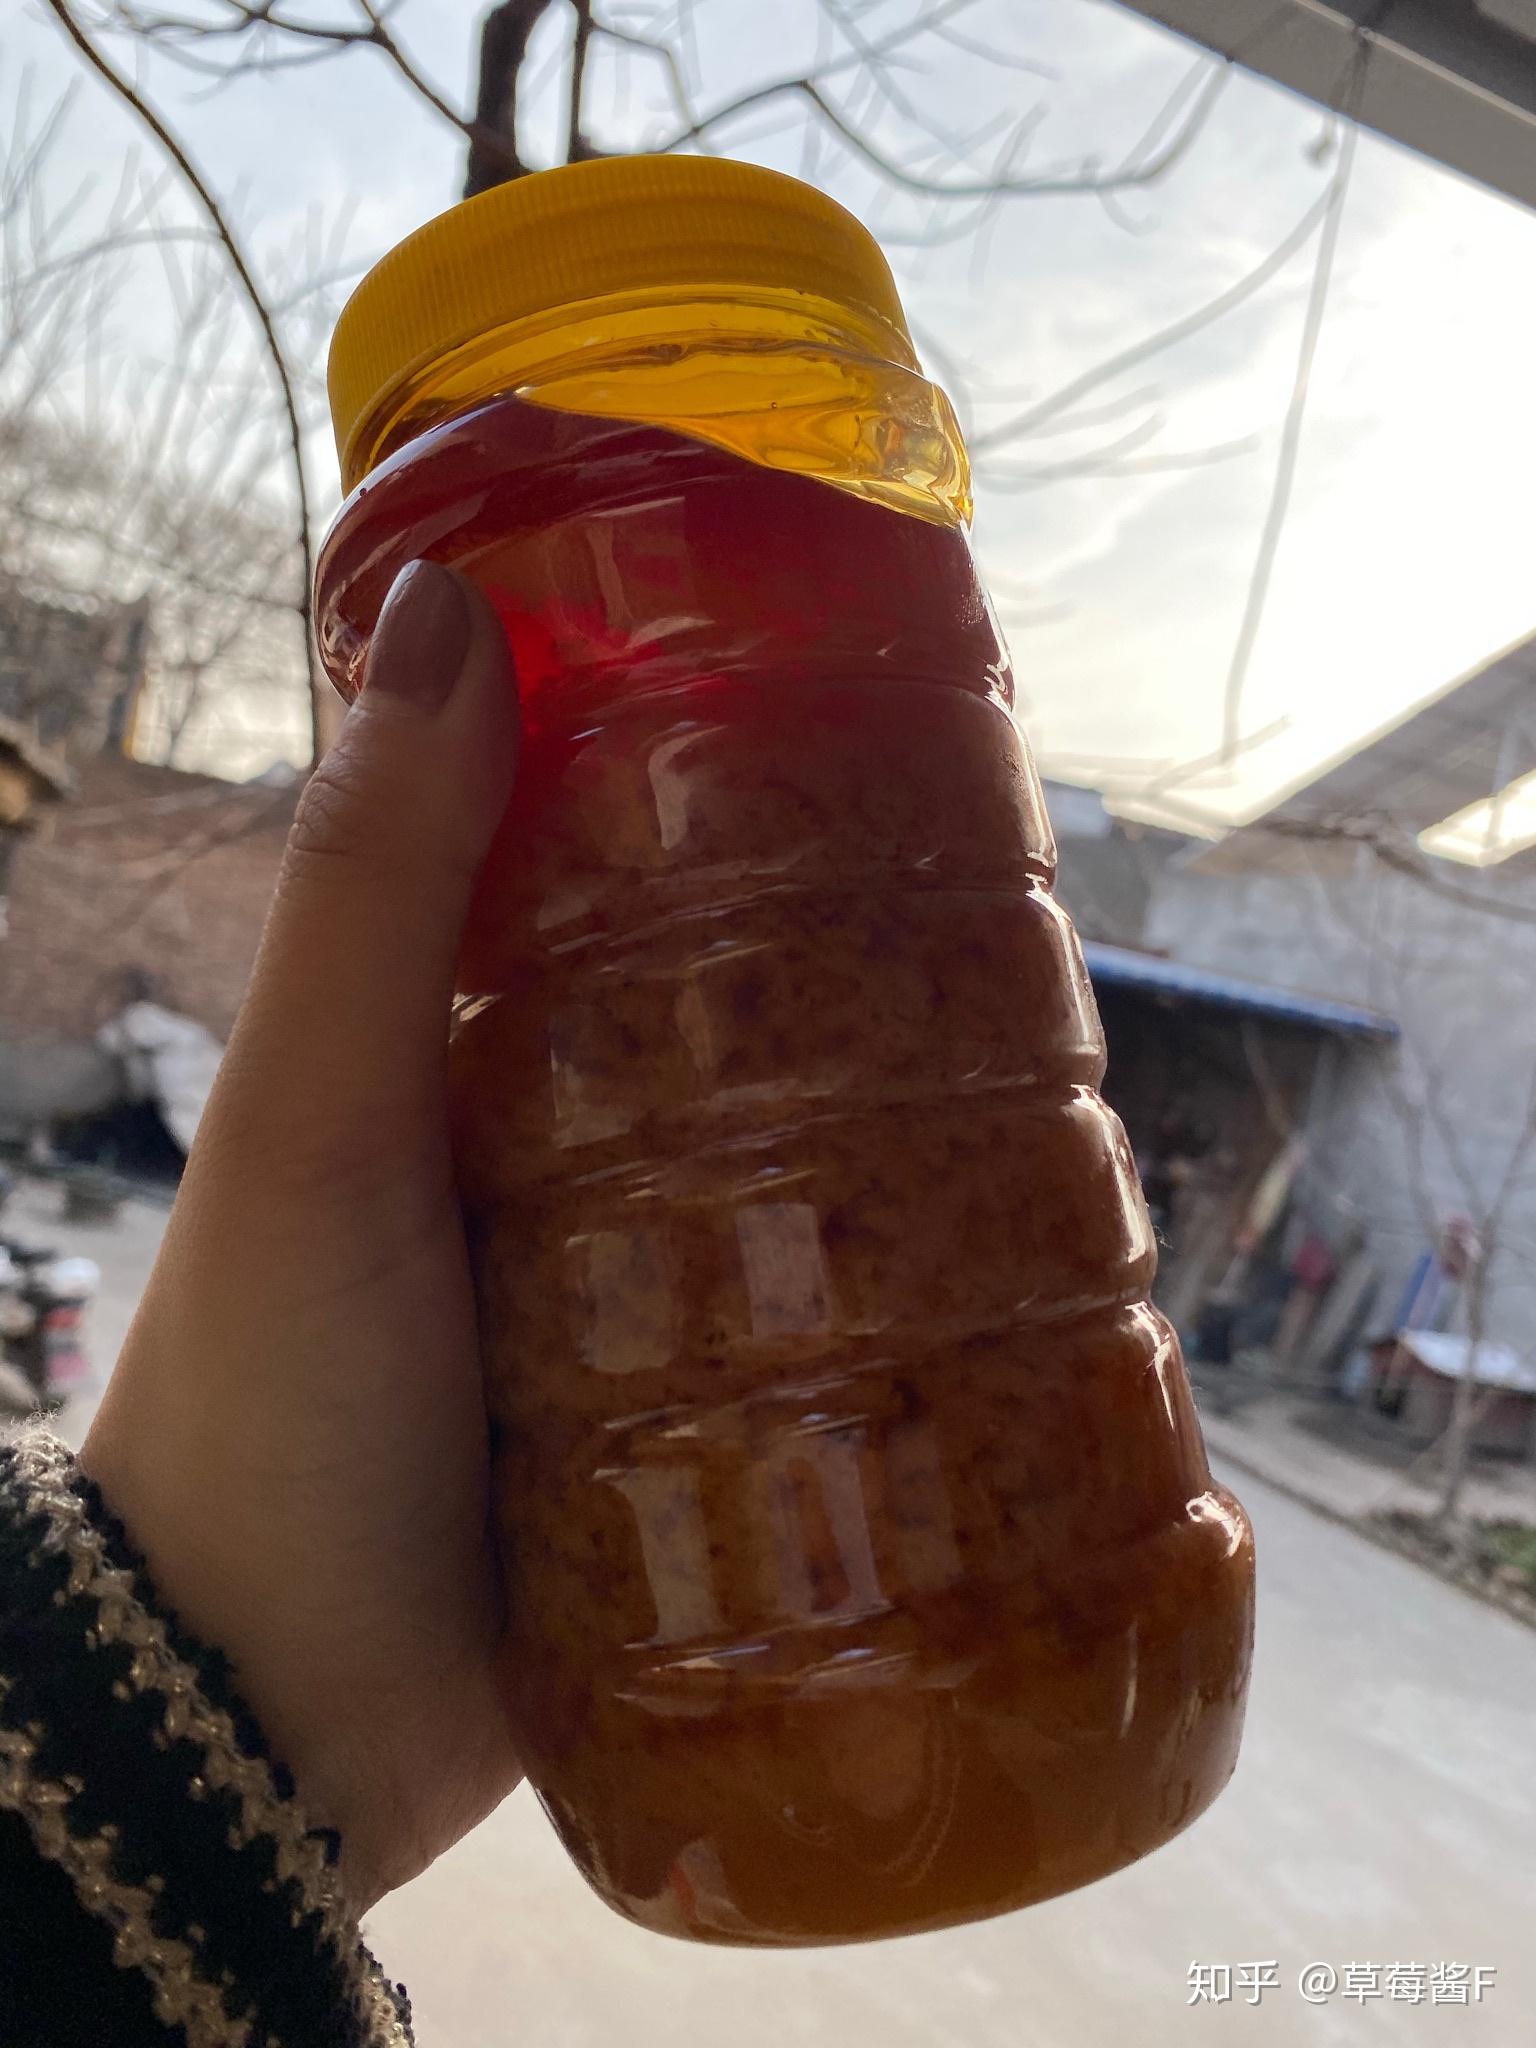 一瓶好蜂蜜，应该多少钱？ - 知乎